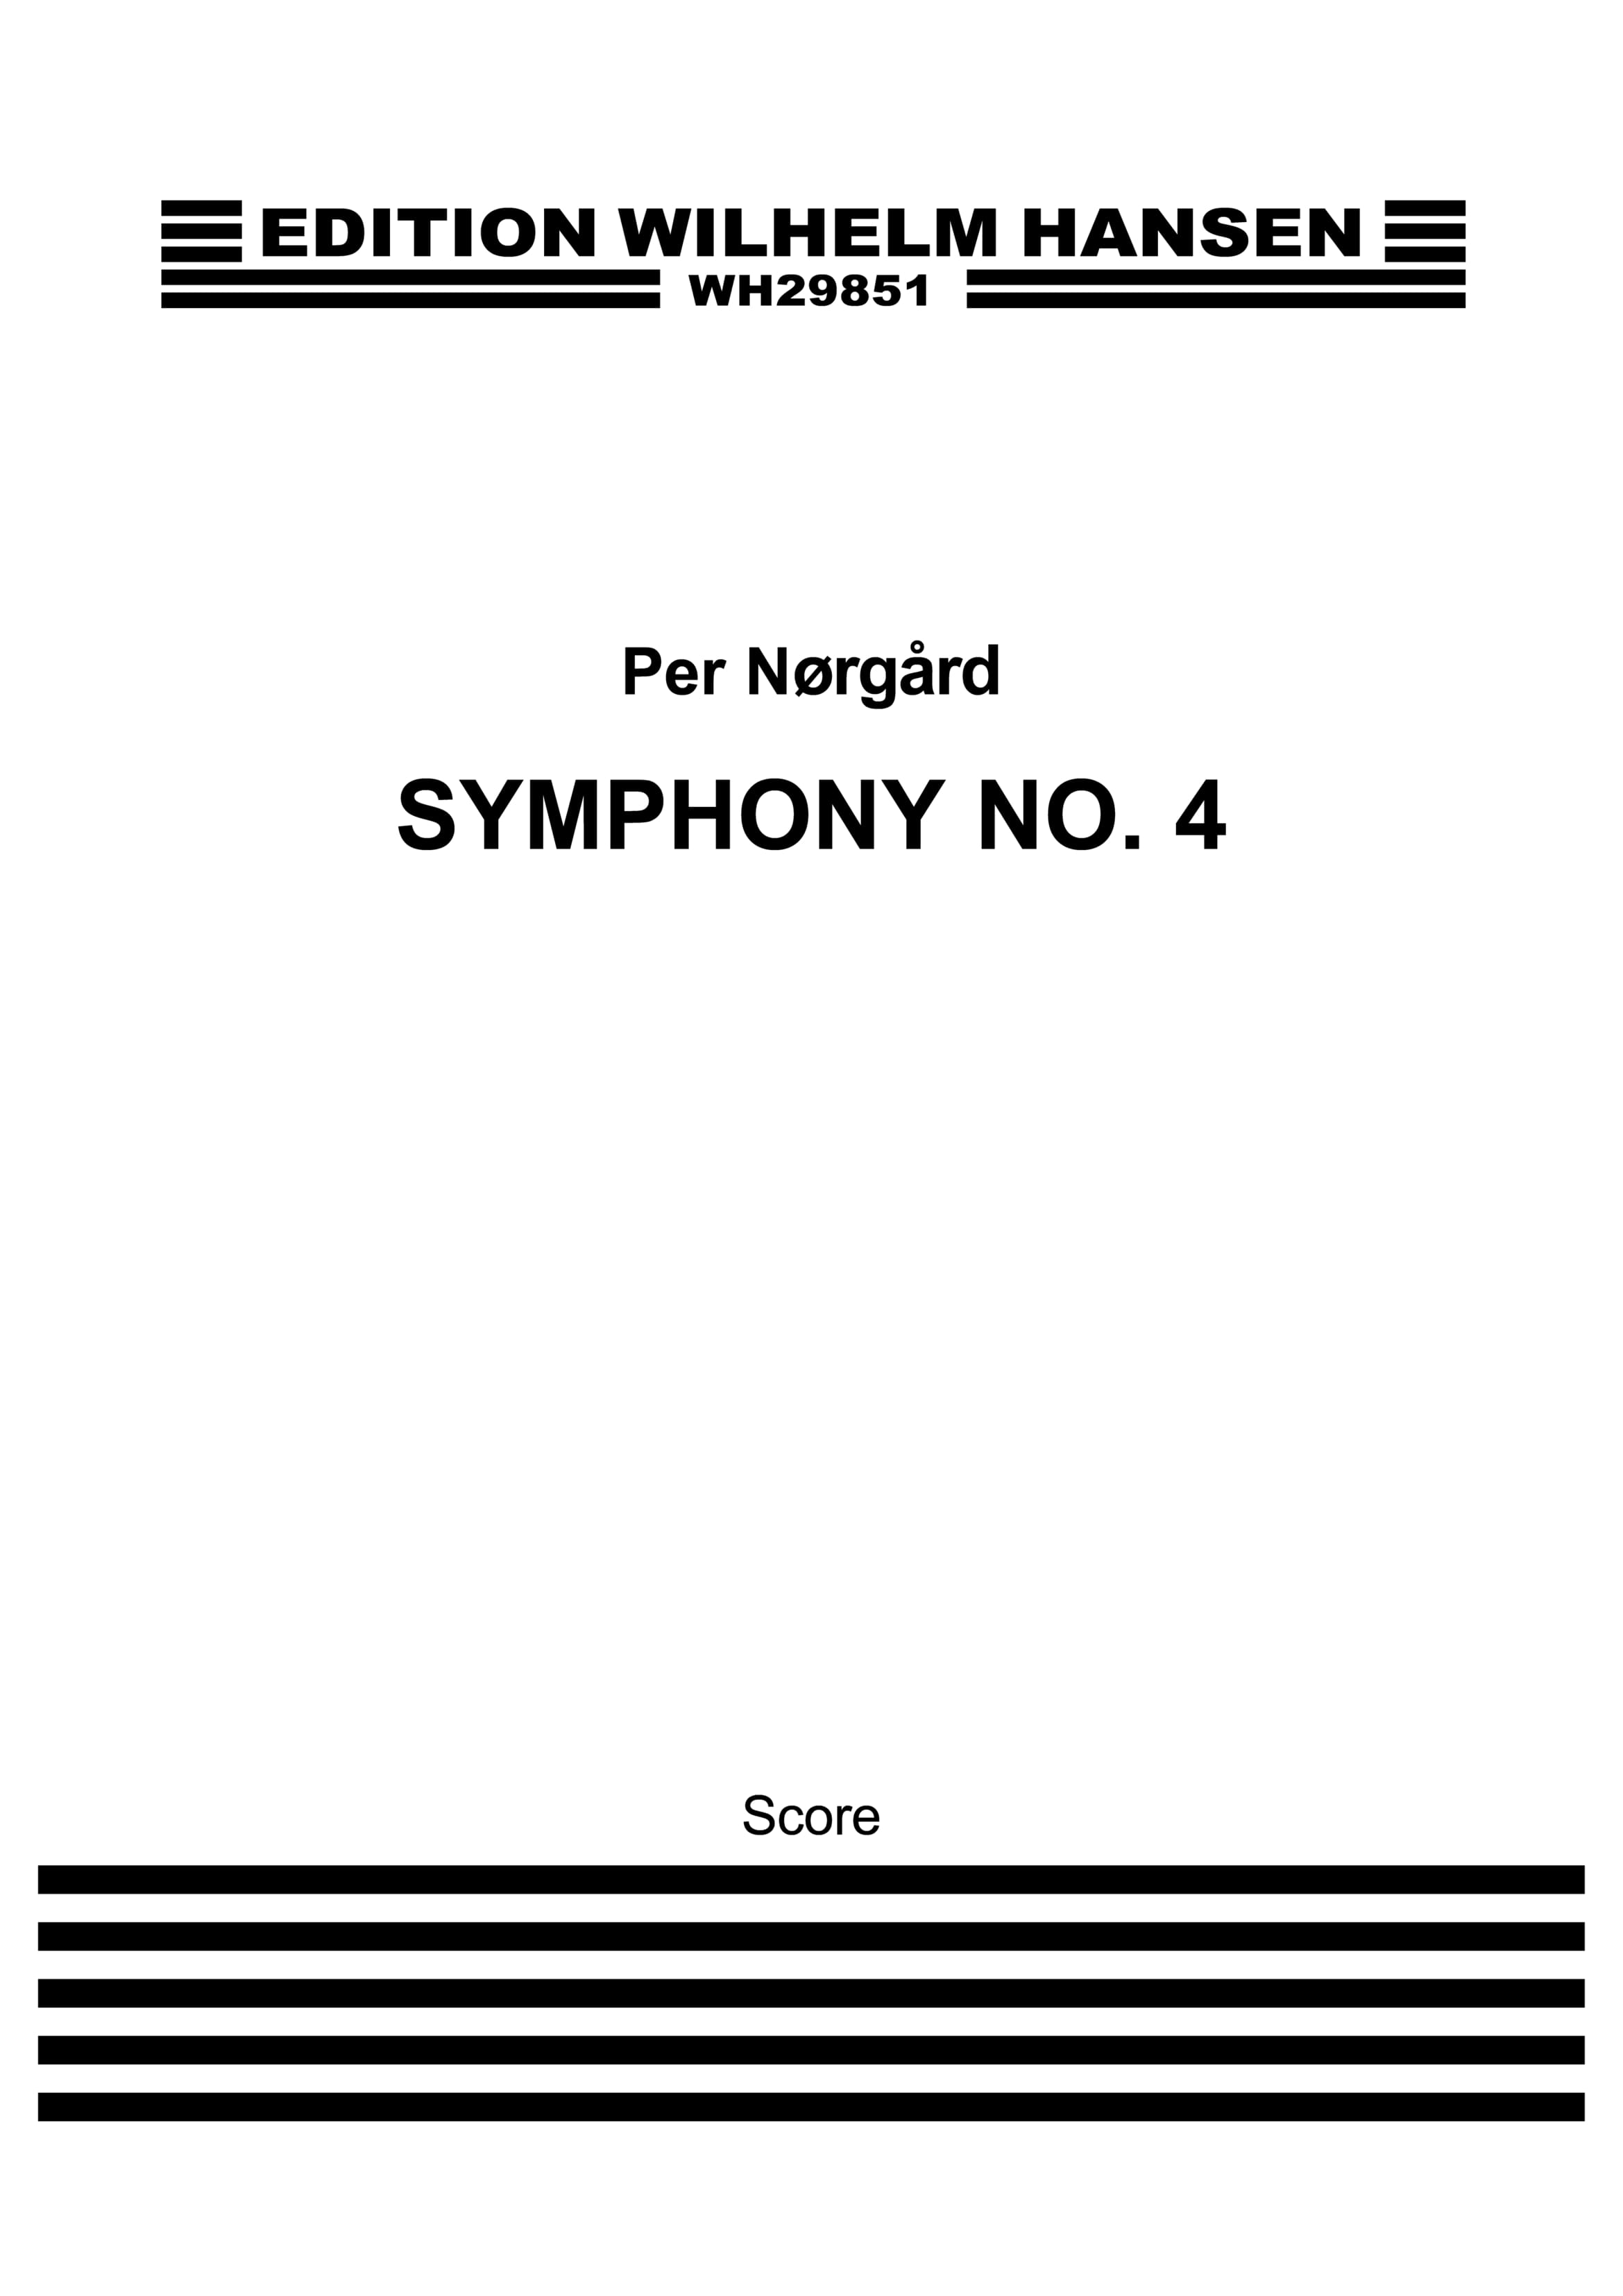 Per Nrgrd: Symphony No.4 (Score)